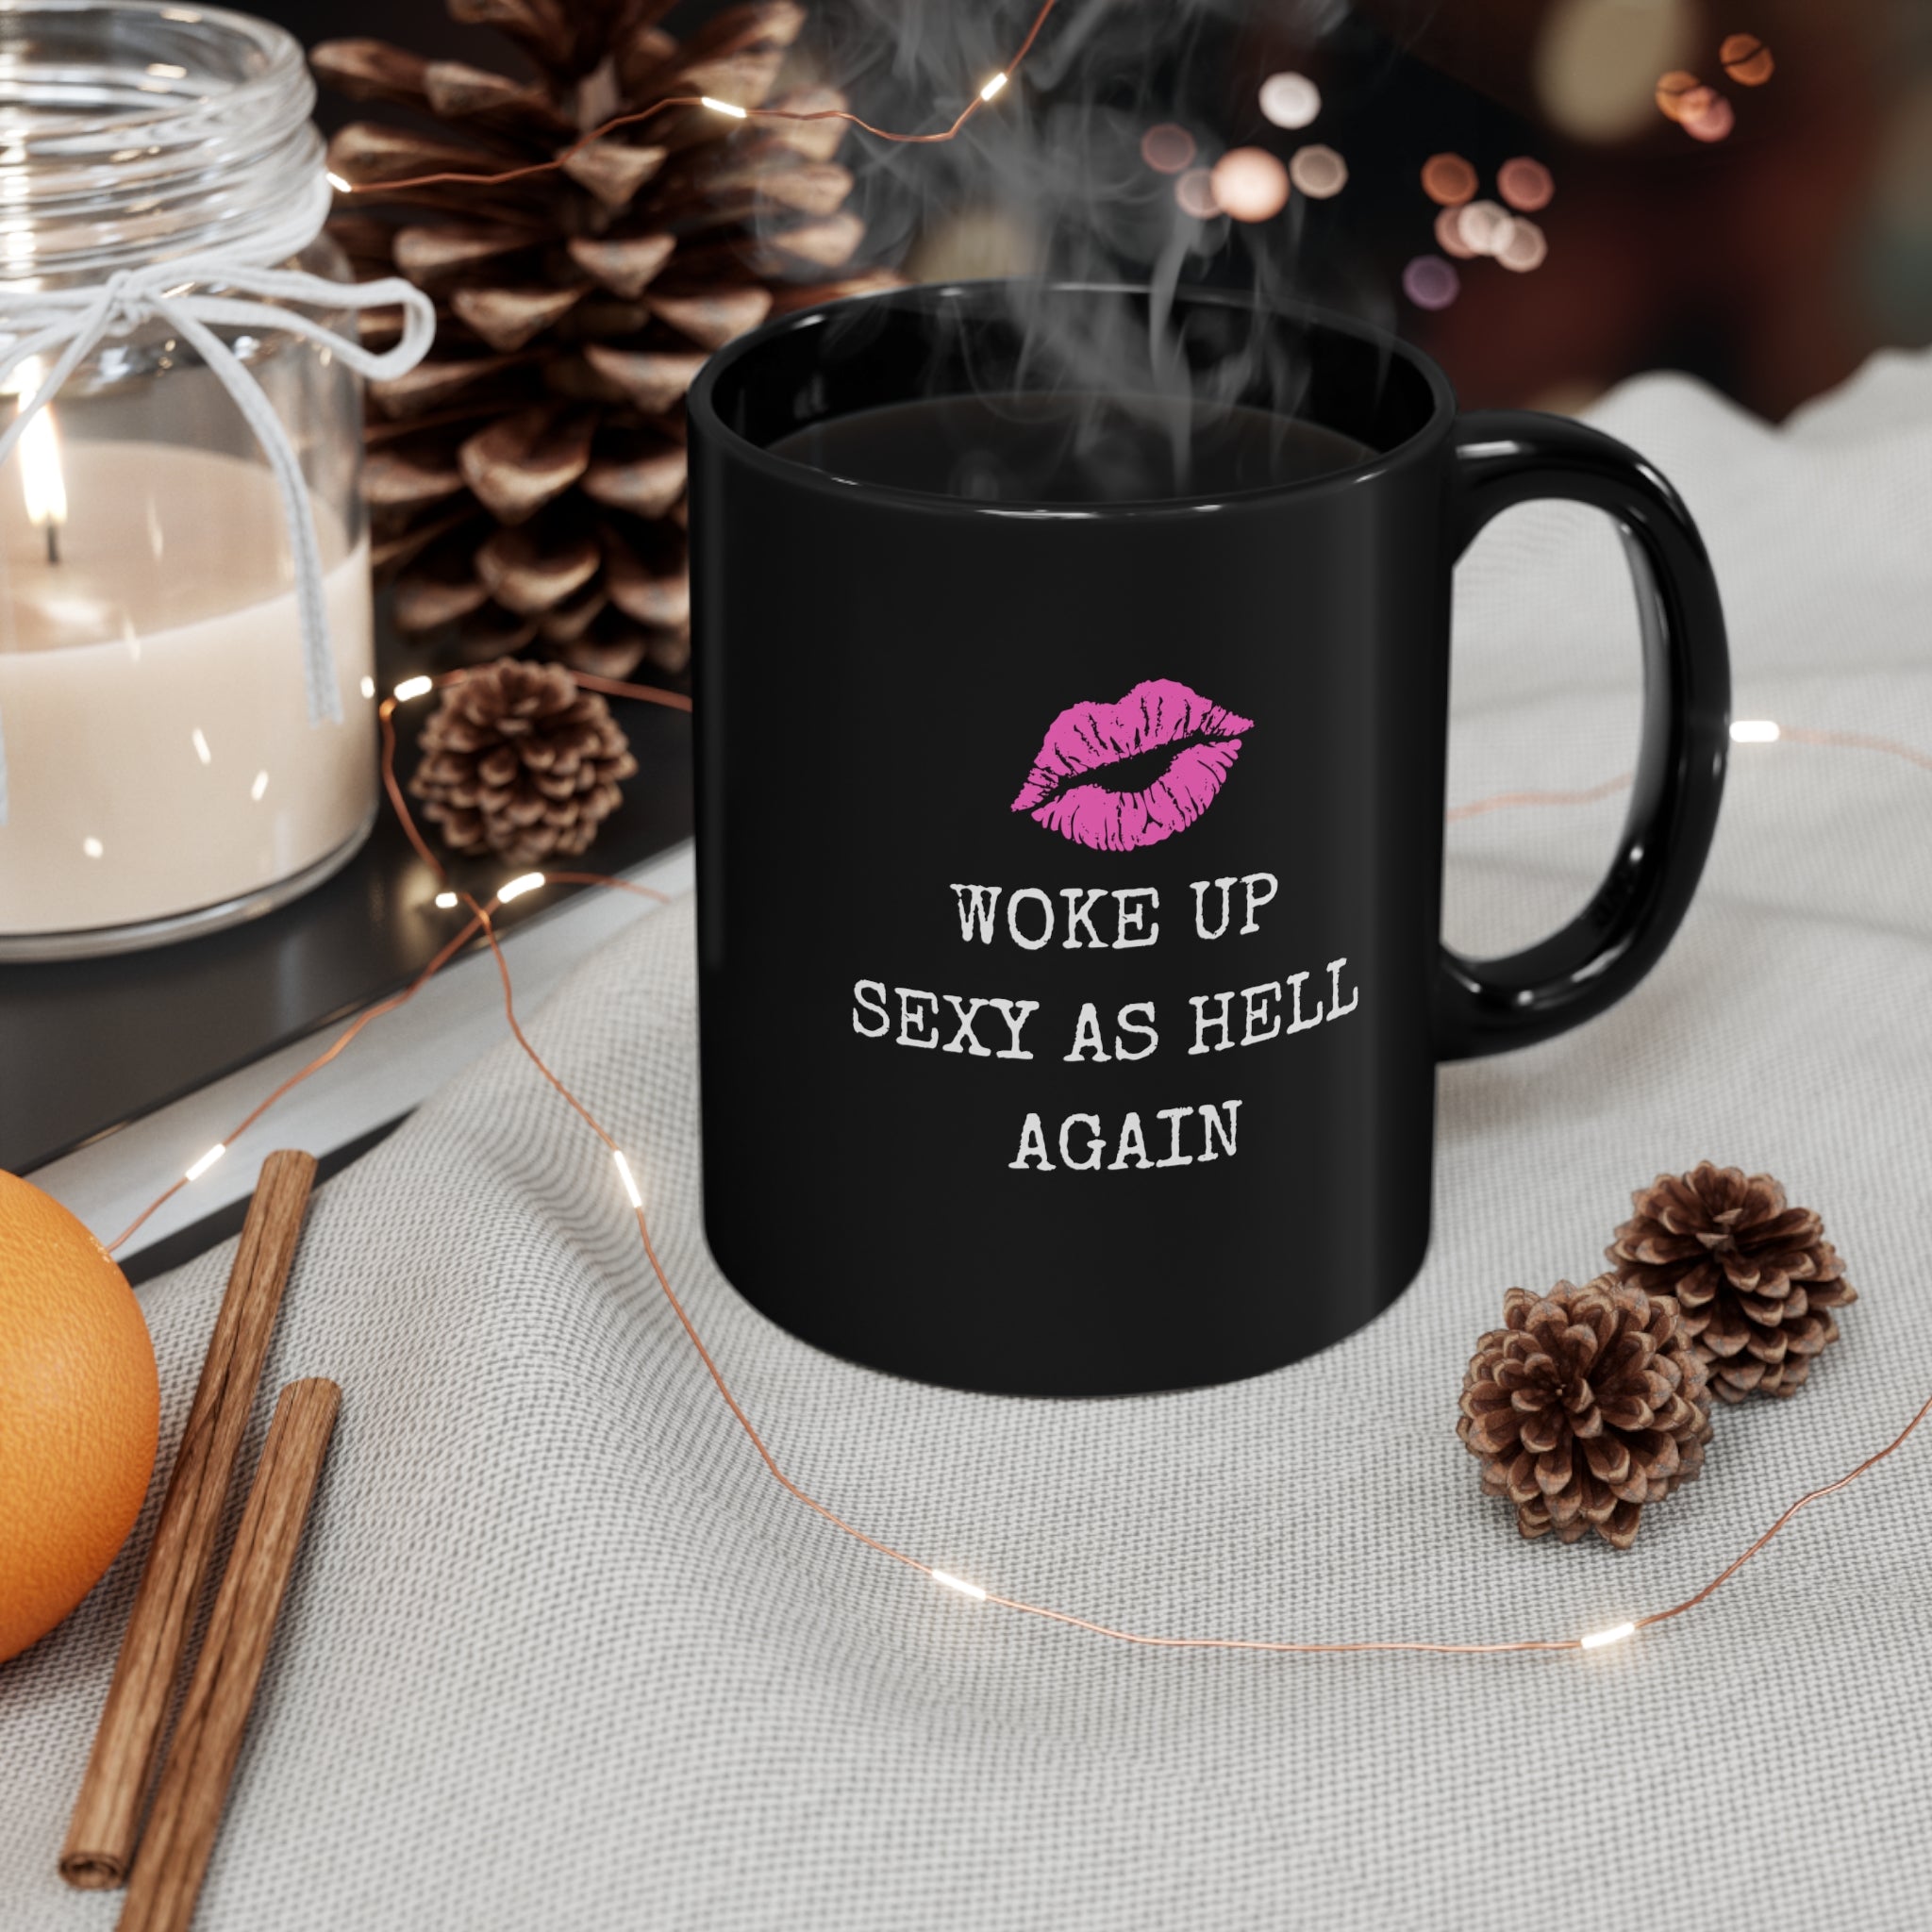 Woke Up Sexy As Hell Again, Female Empowerment 11oz Black Coffee Mug